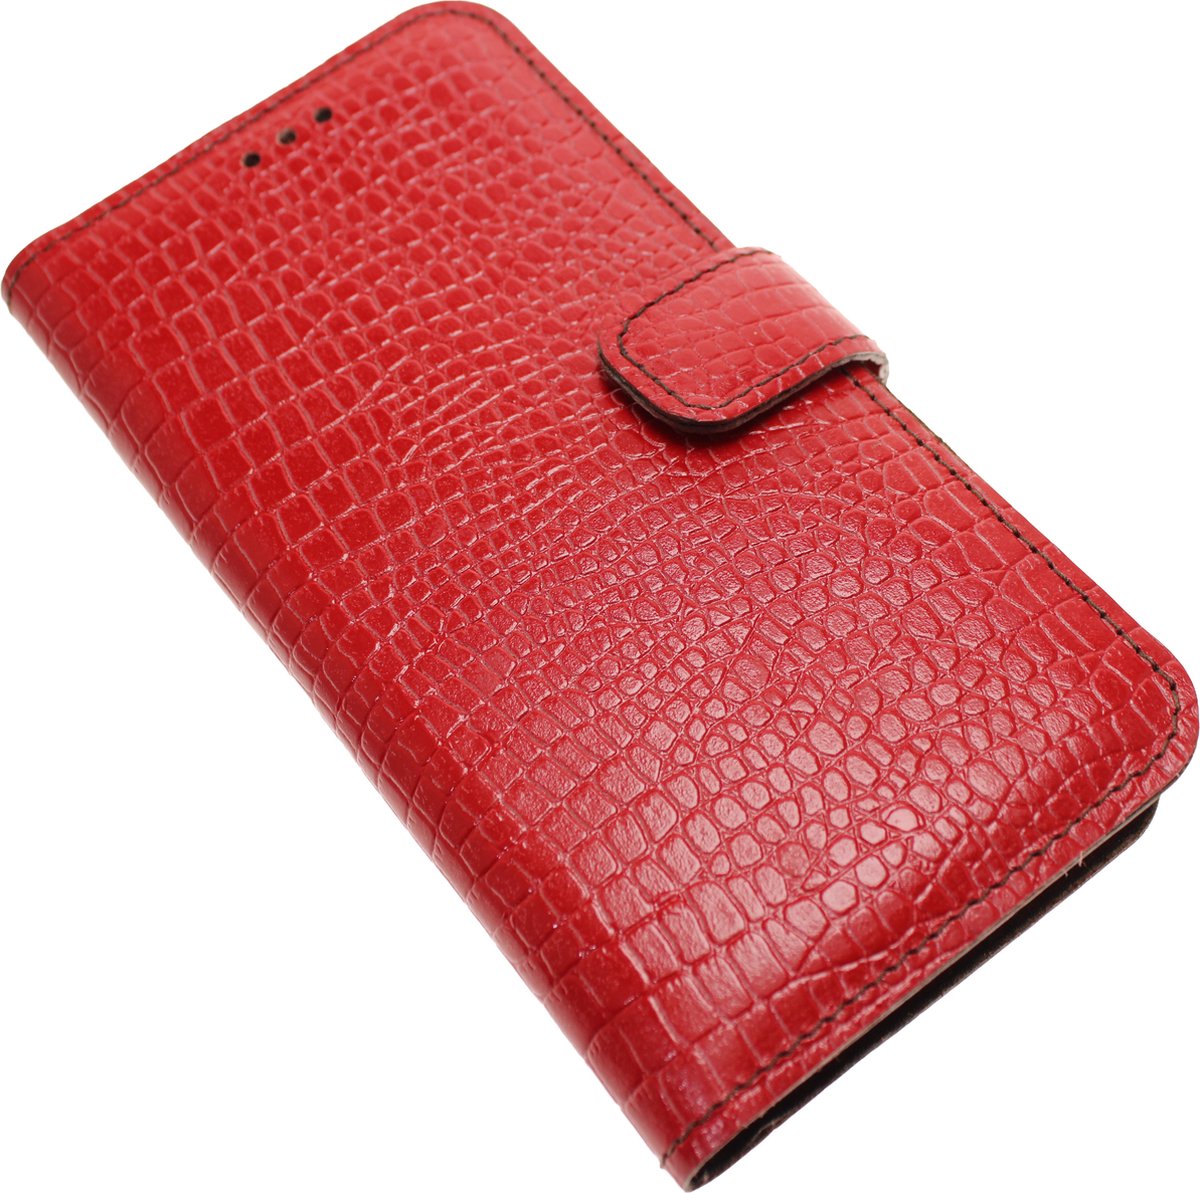 Made-NL Handgemaakte ( Apple iPhone XS ) book case Rood krokoillenprint reliëf kalfsleer robuuste hoesje